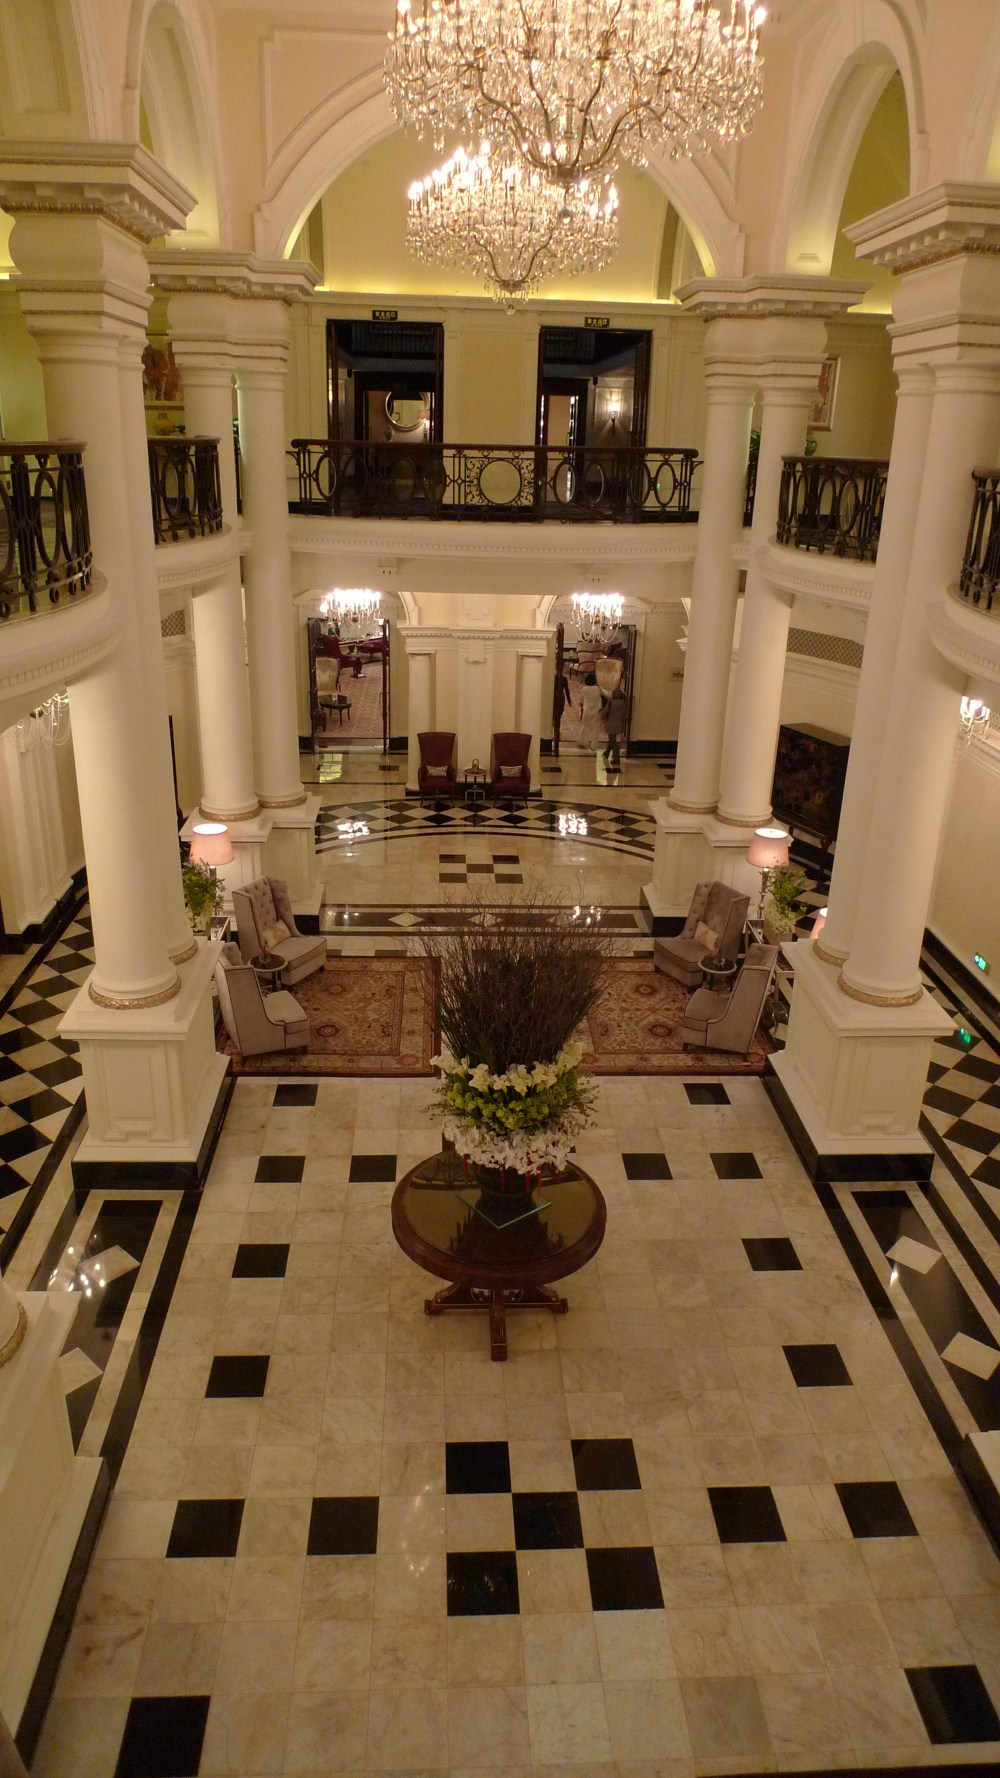 上海华尔道夫酒店(The Waldorf Astoria OnTheBund)(HBA)10.9第10页更新_L1050009.JPG